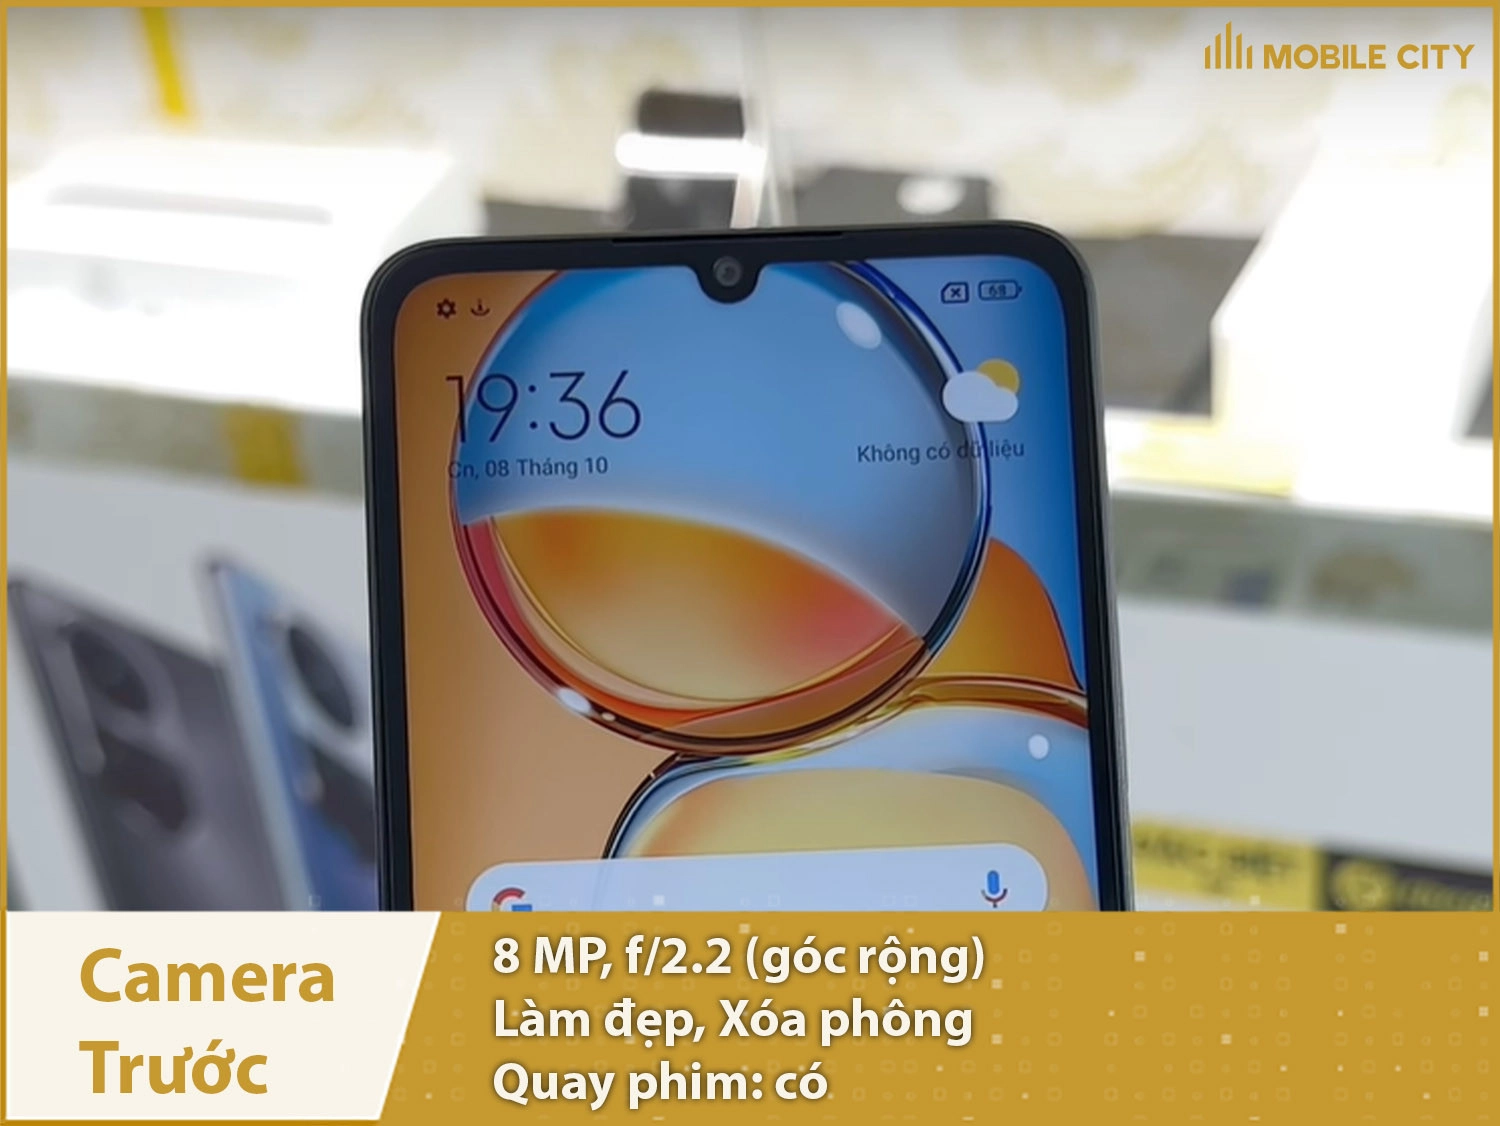 Xiaomi Redmi 13C, Giá rẻ, camera cực nét